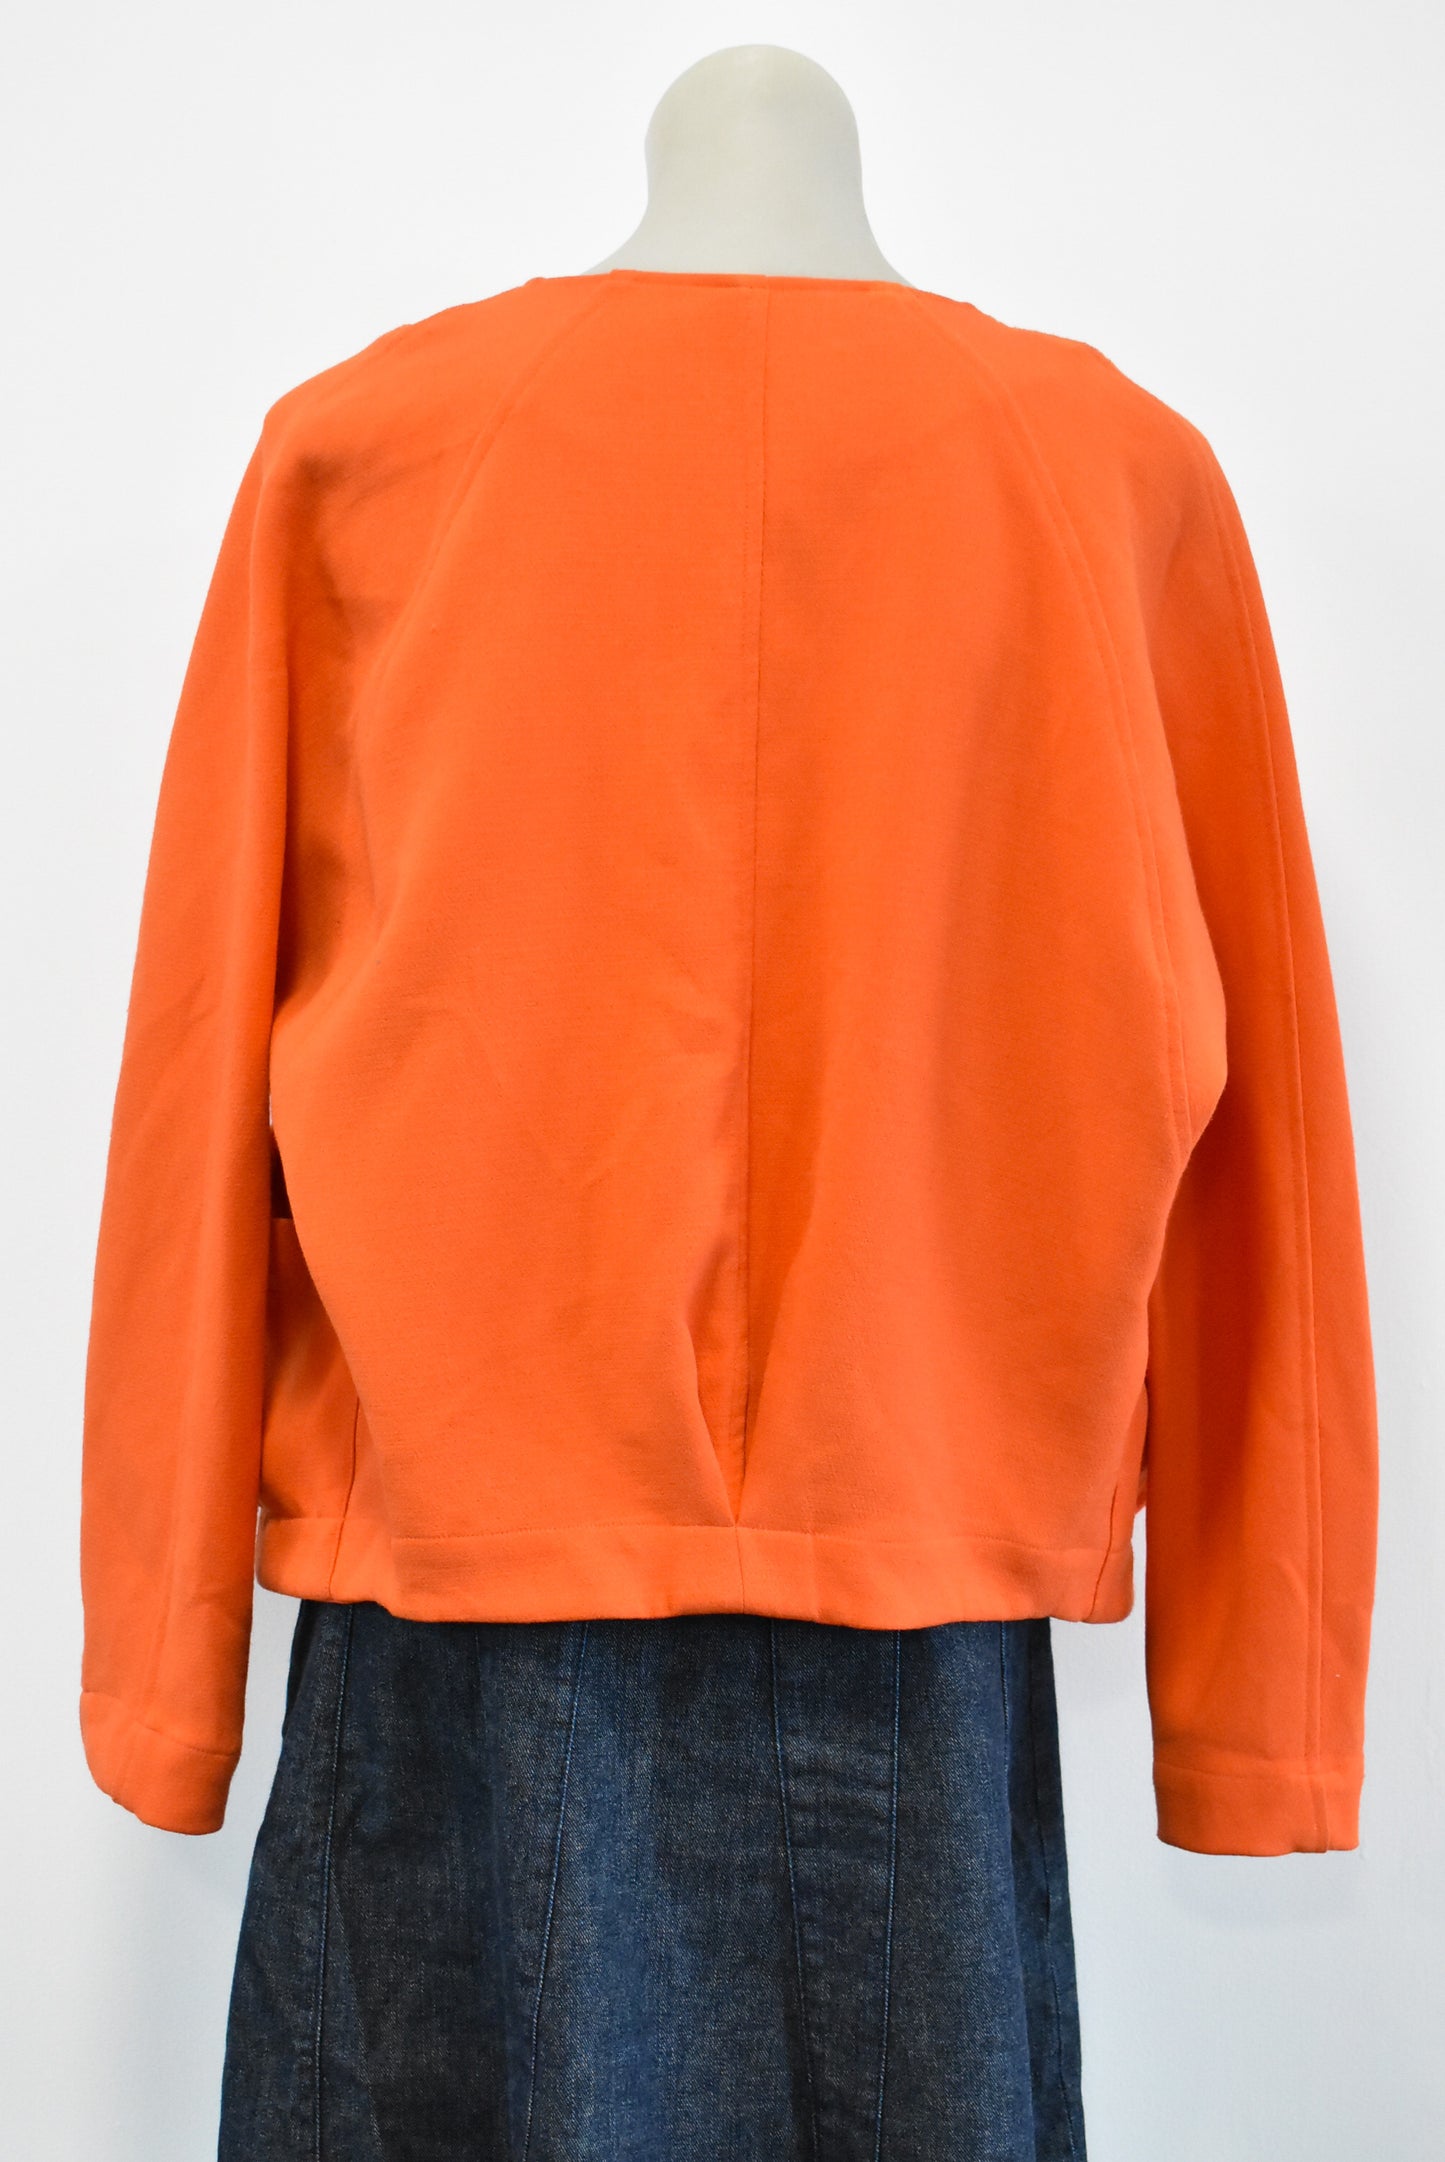 Moochi (NZ) cropped open front orange jacket/top, 10